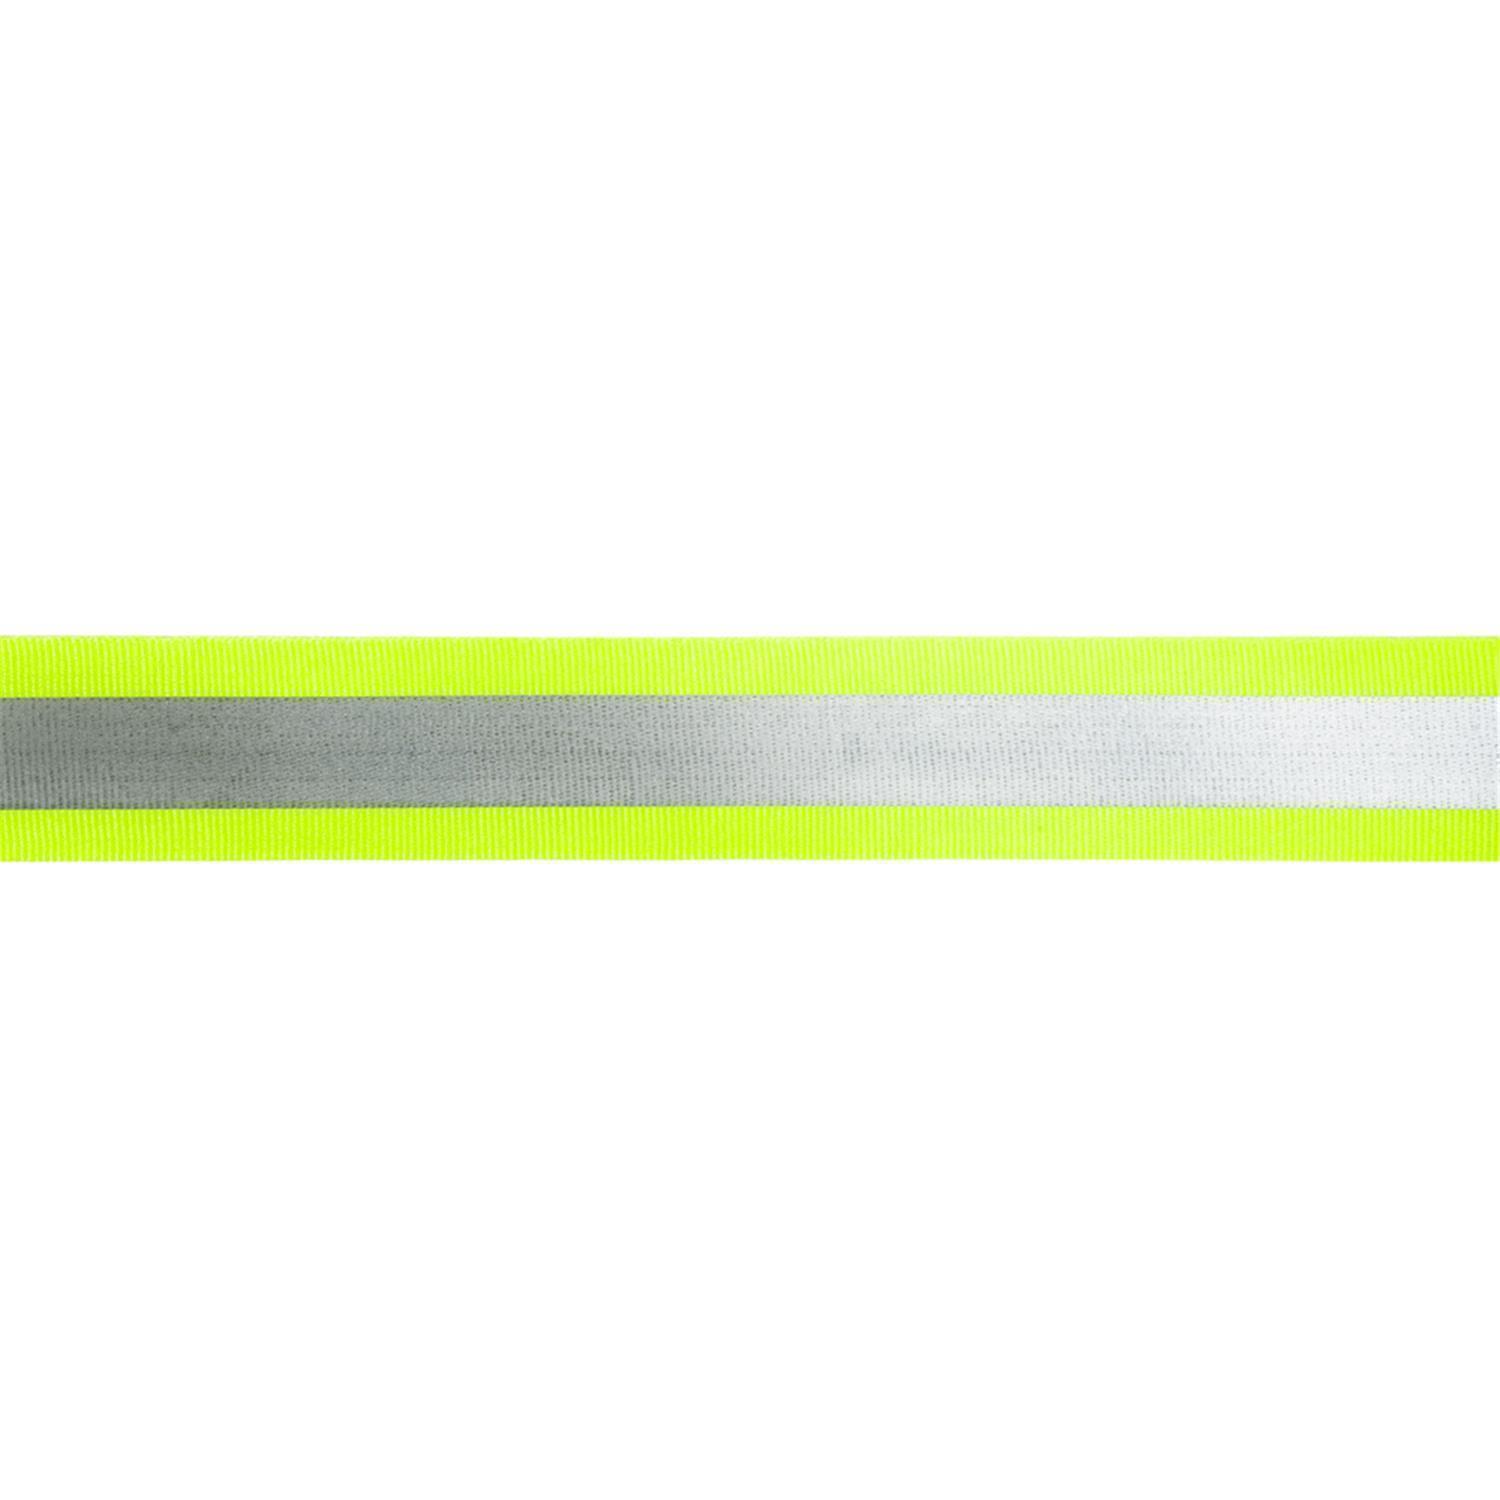 Reflektorband 40mm breit in 2 Farben gelb-silber 10 Meter